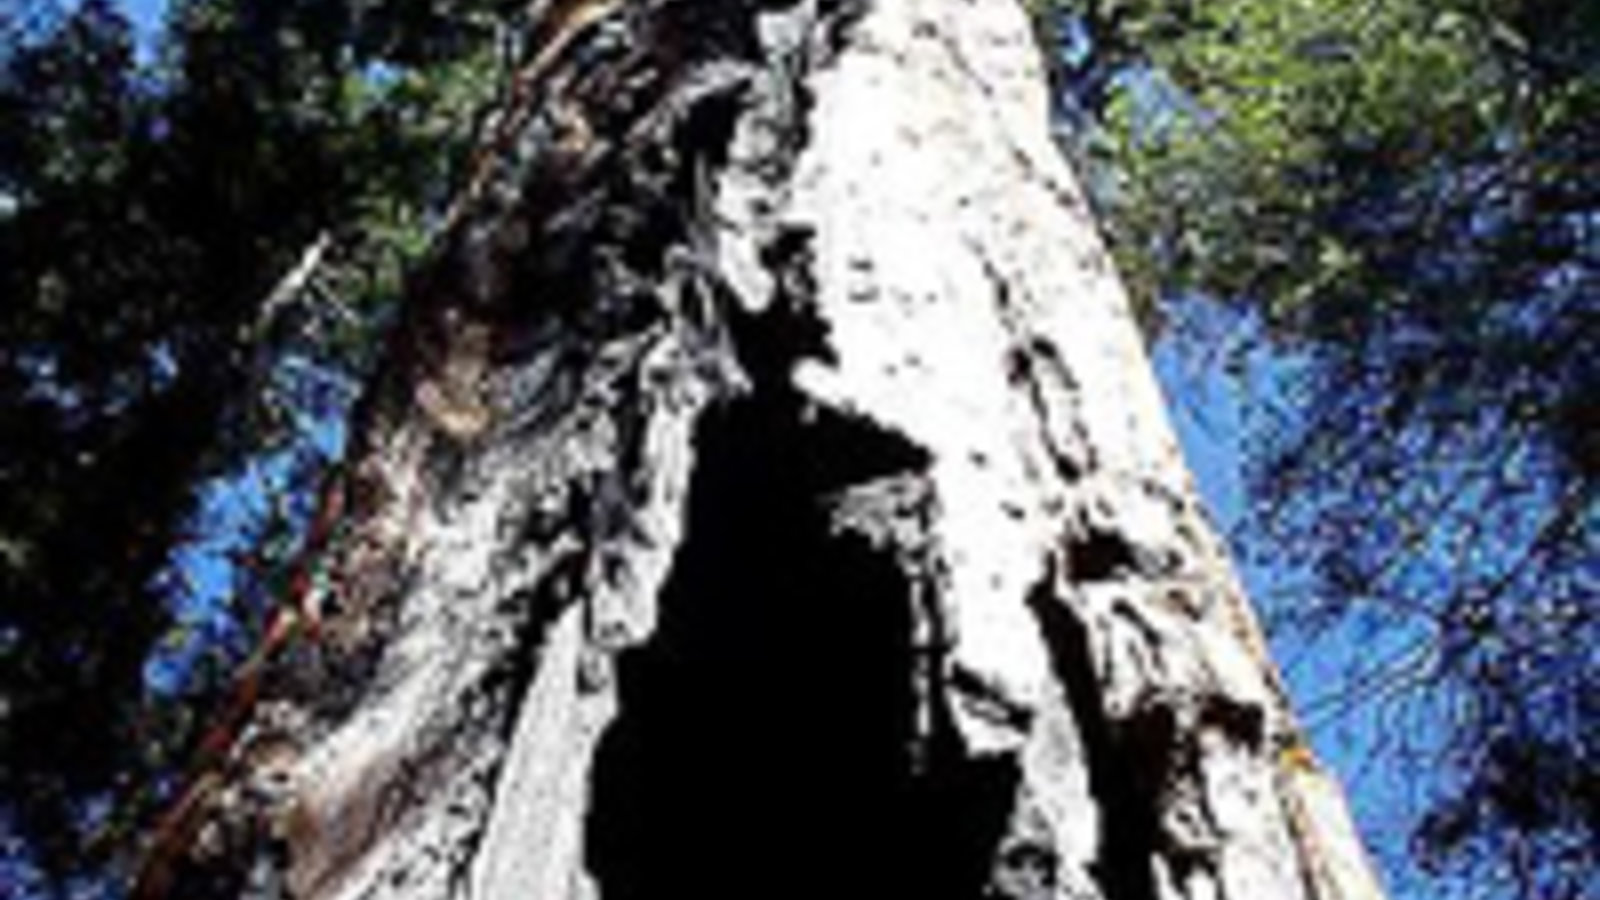 sequoia-park-5-jon-sullivan.jpg